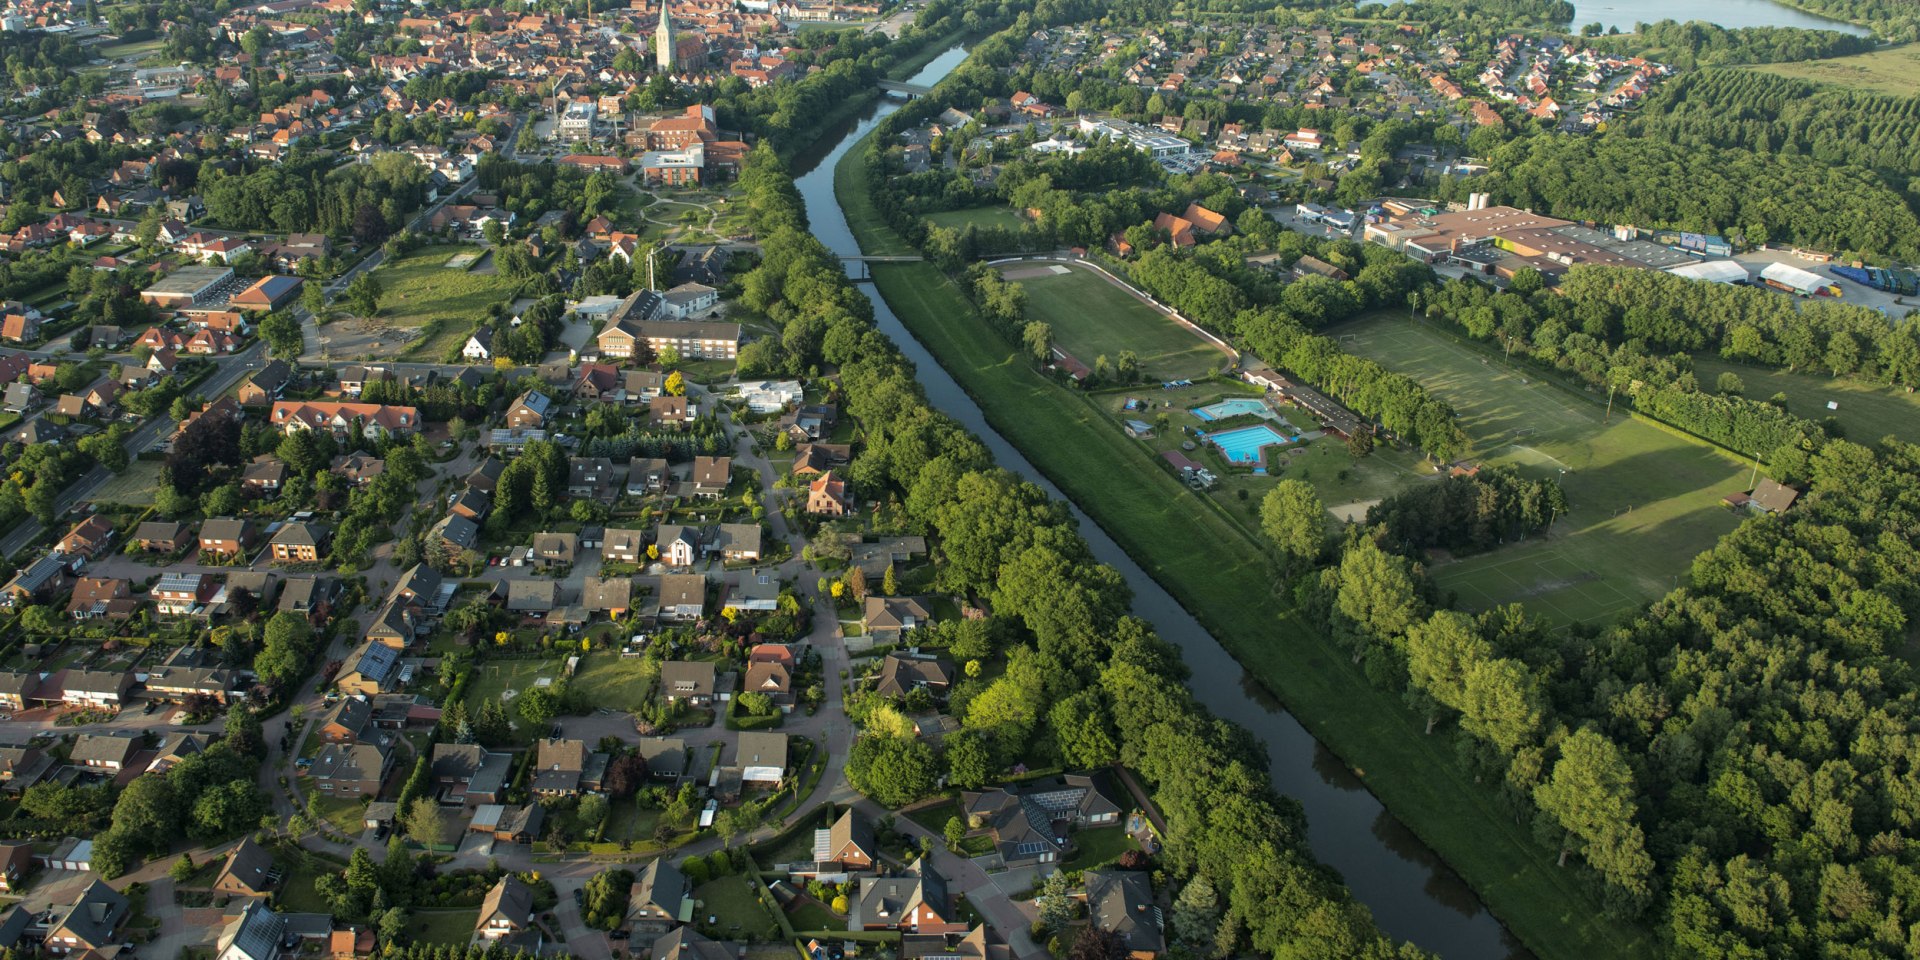 Luftbild von Haselünne, © Touristinfo Stadt Haselünne / Diter Schinner